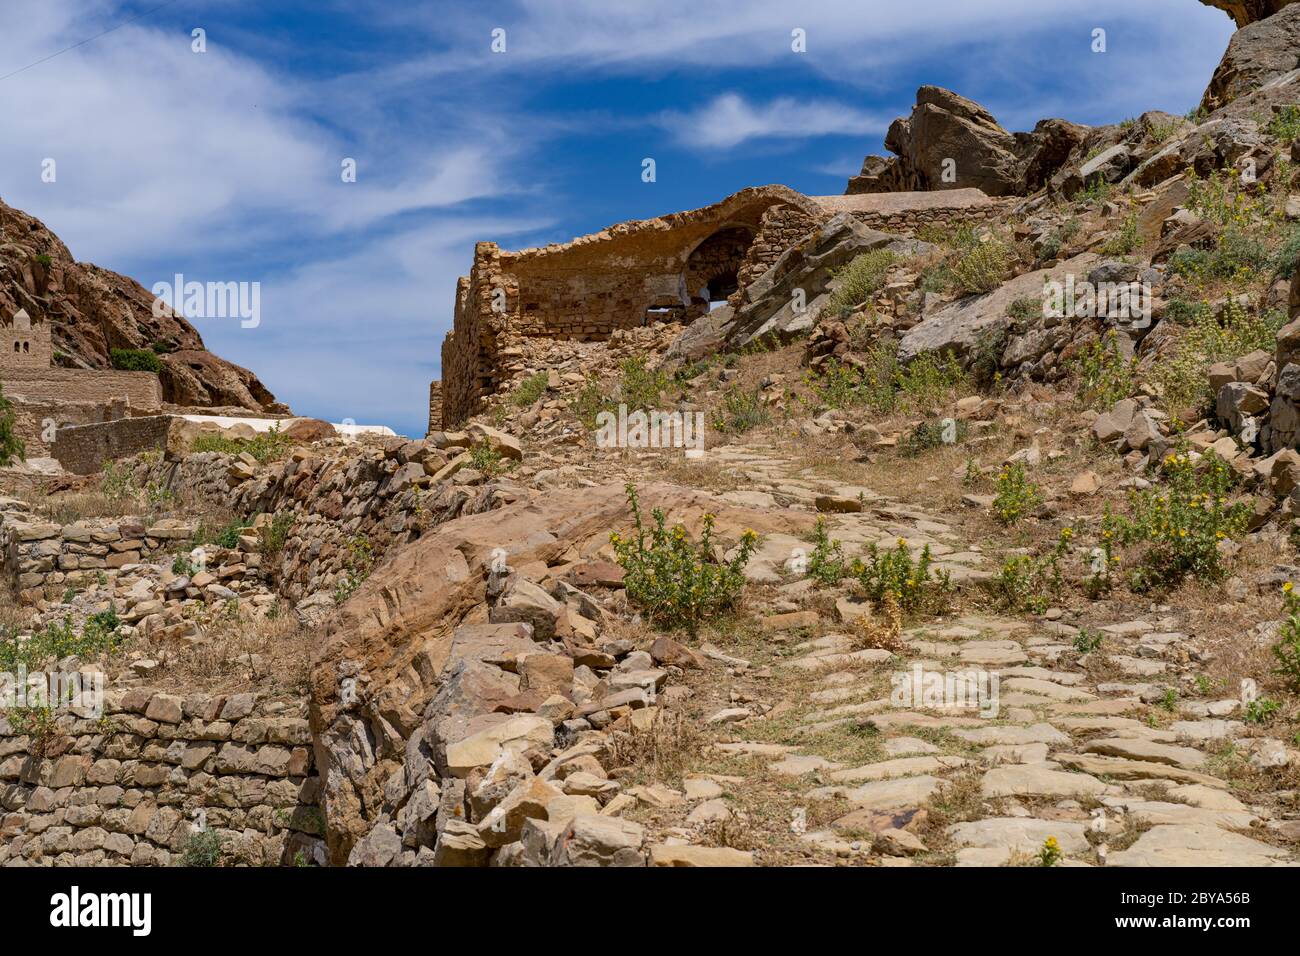 The abandonned berber village of Zriba, tunisia Stock Photo